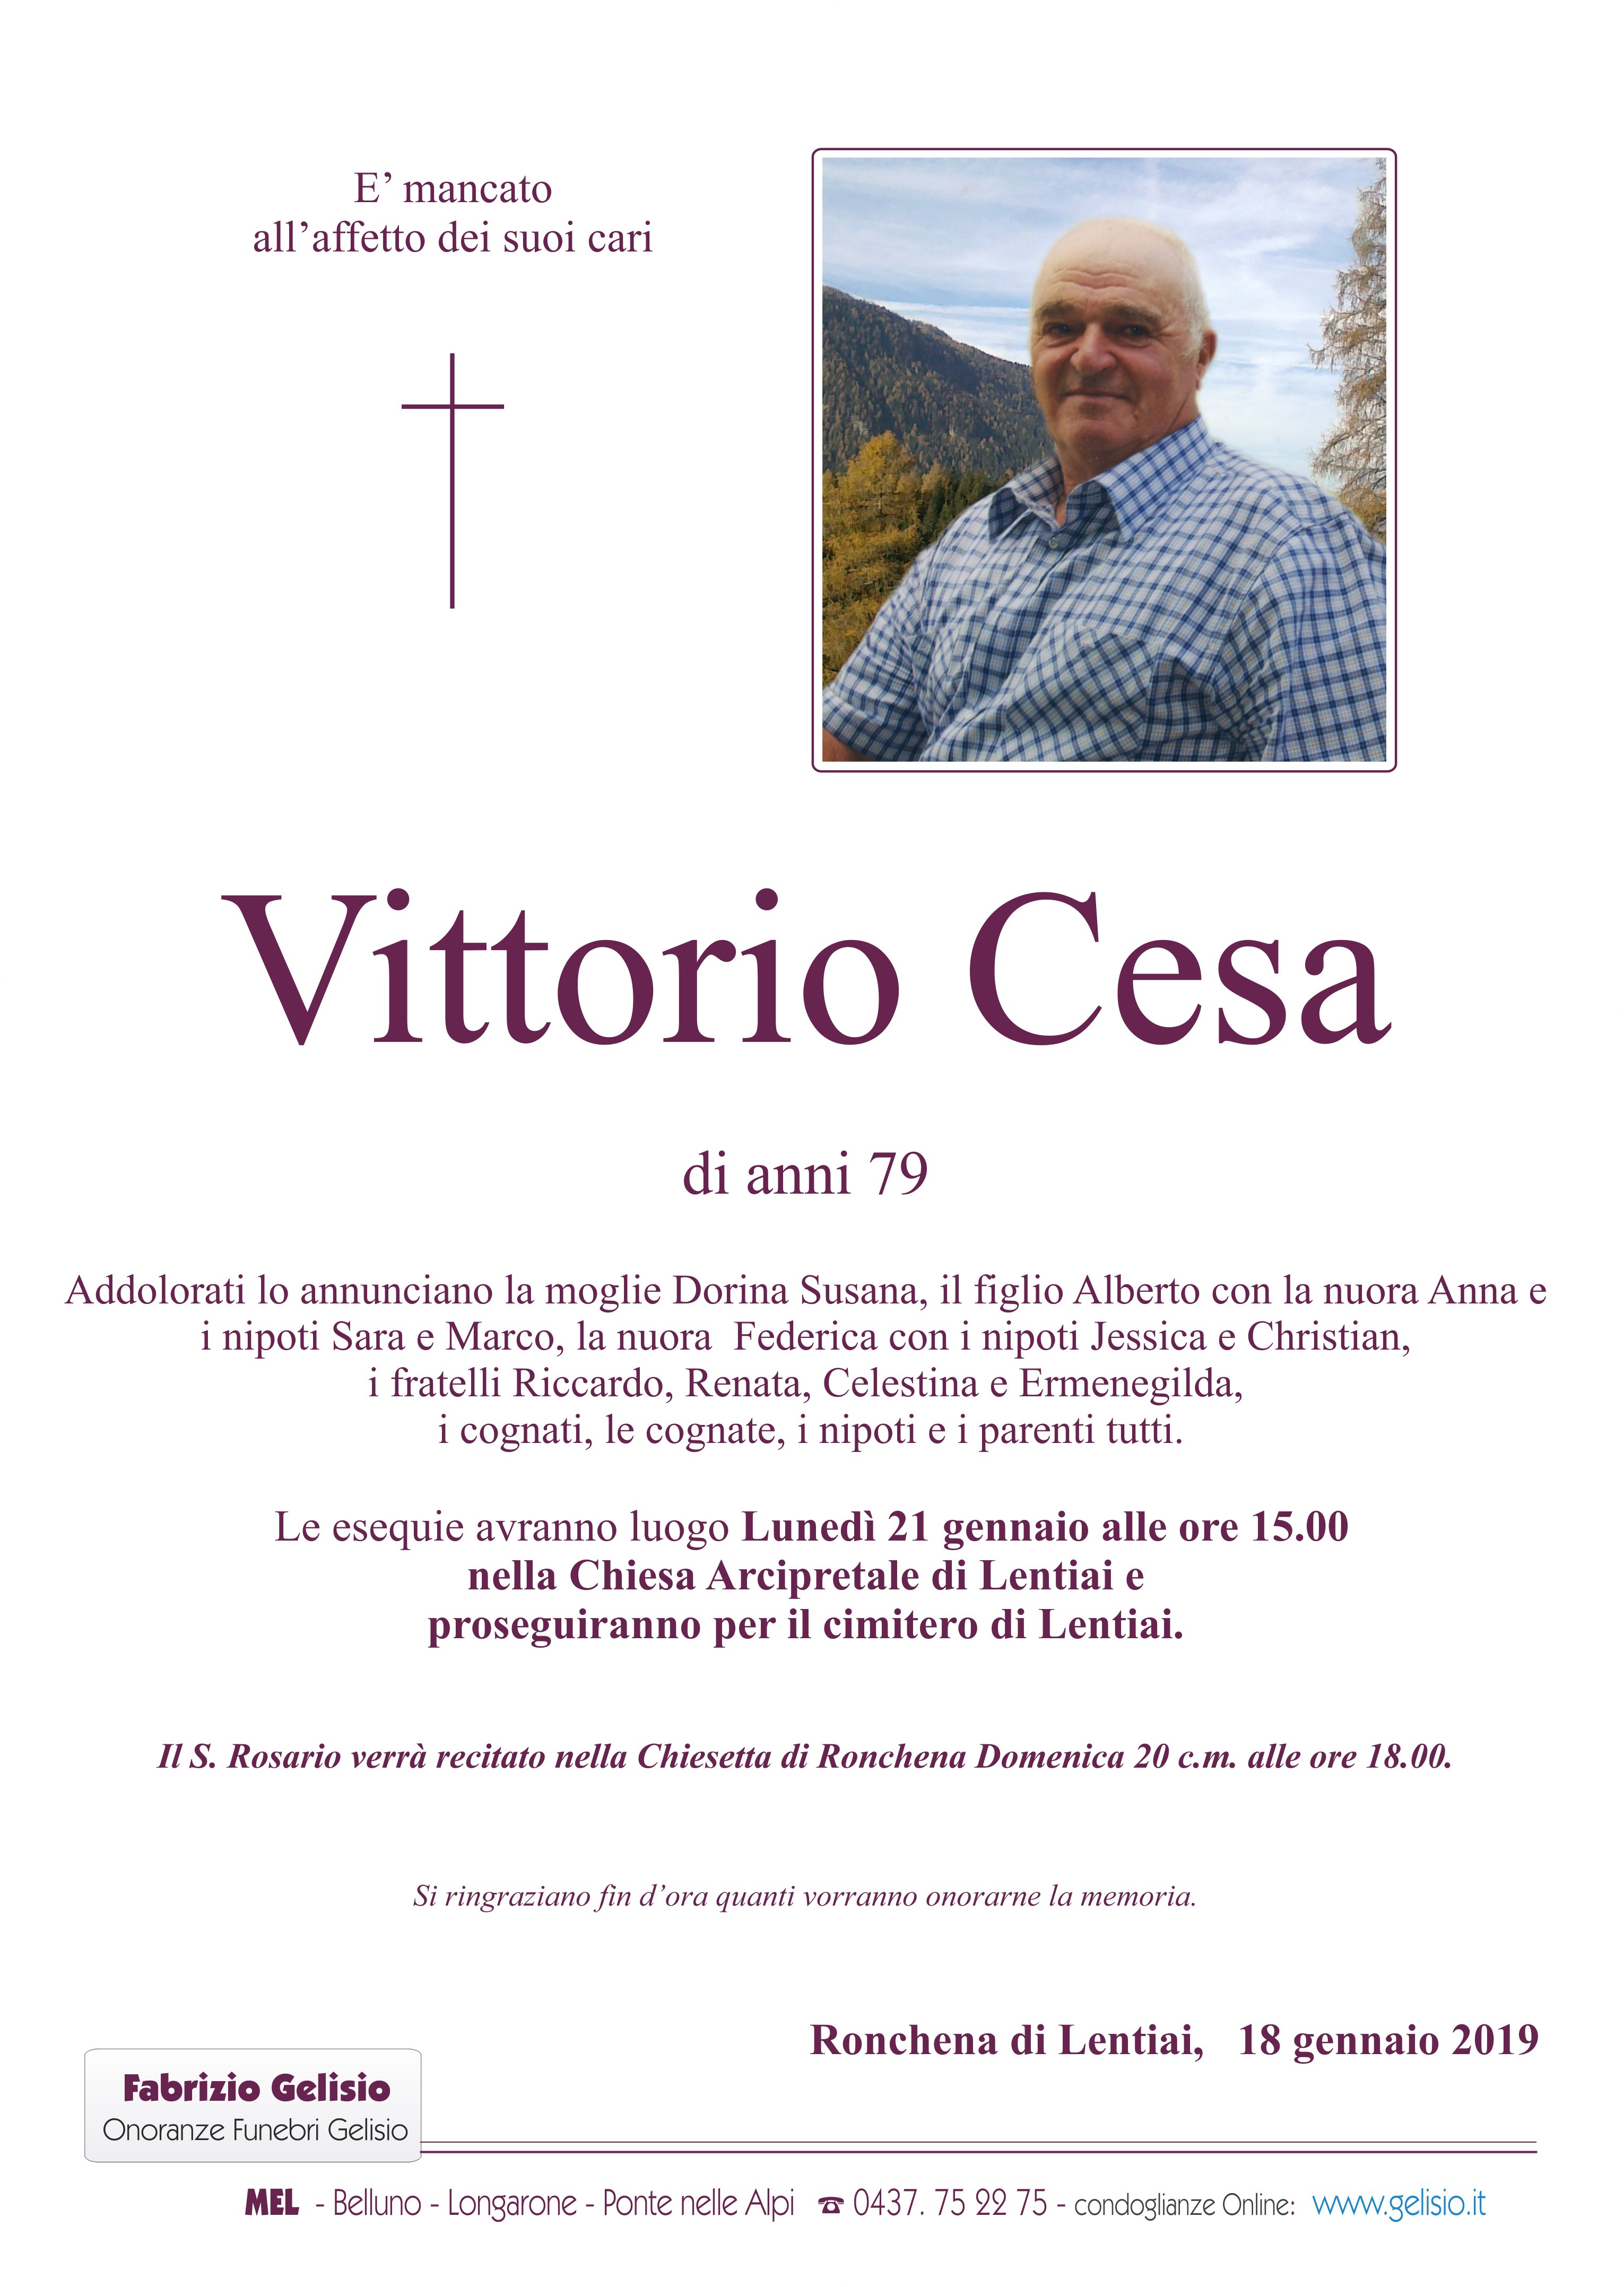 Cesa Vittorio